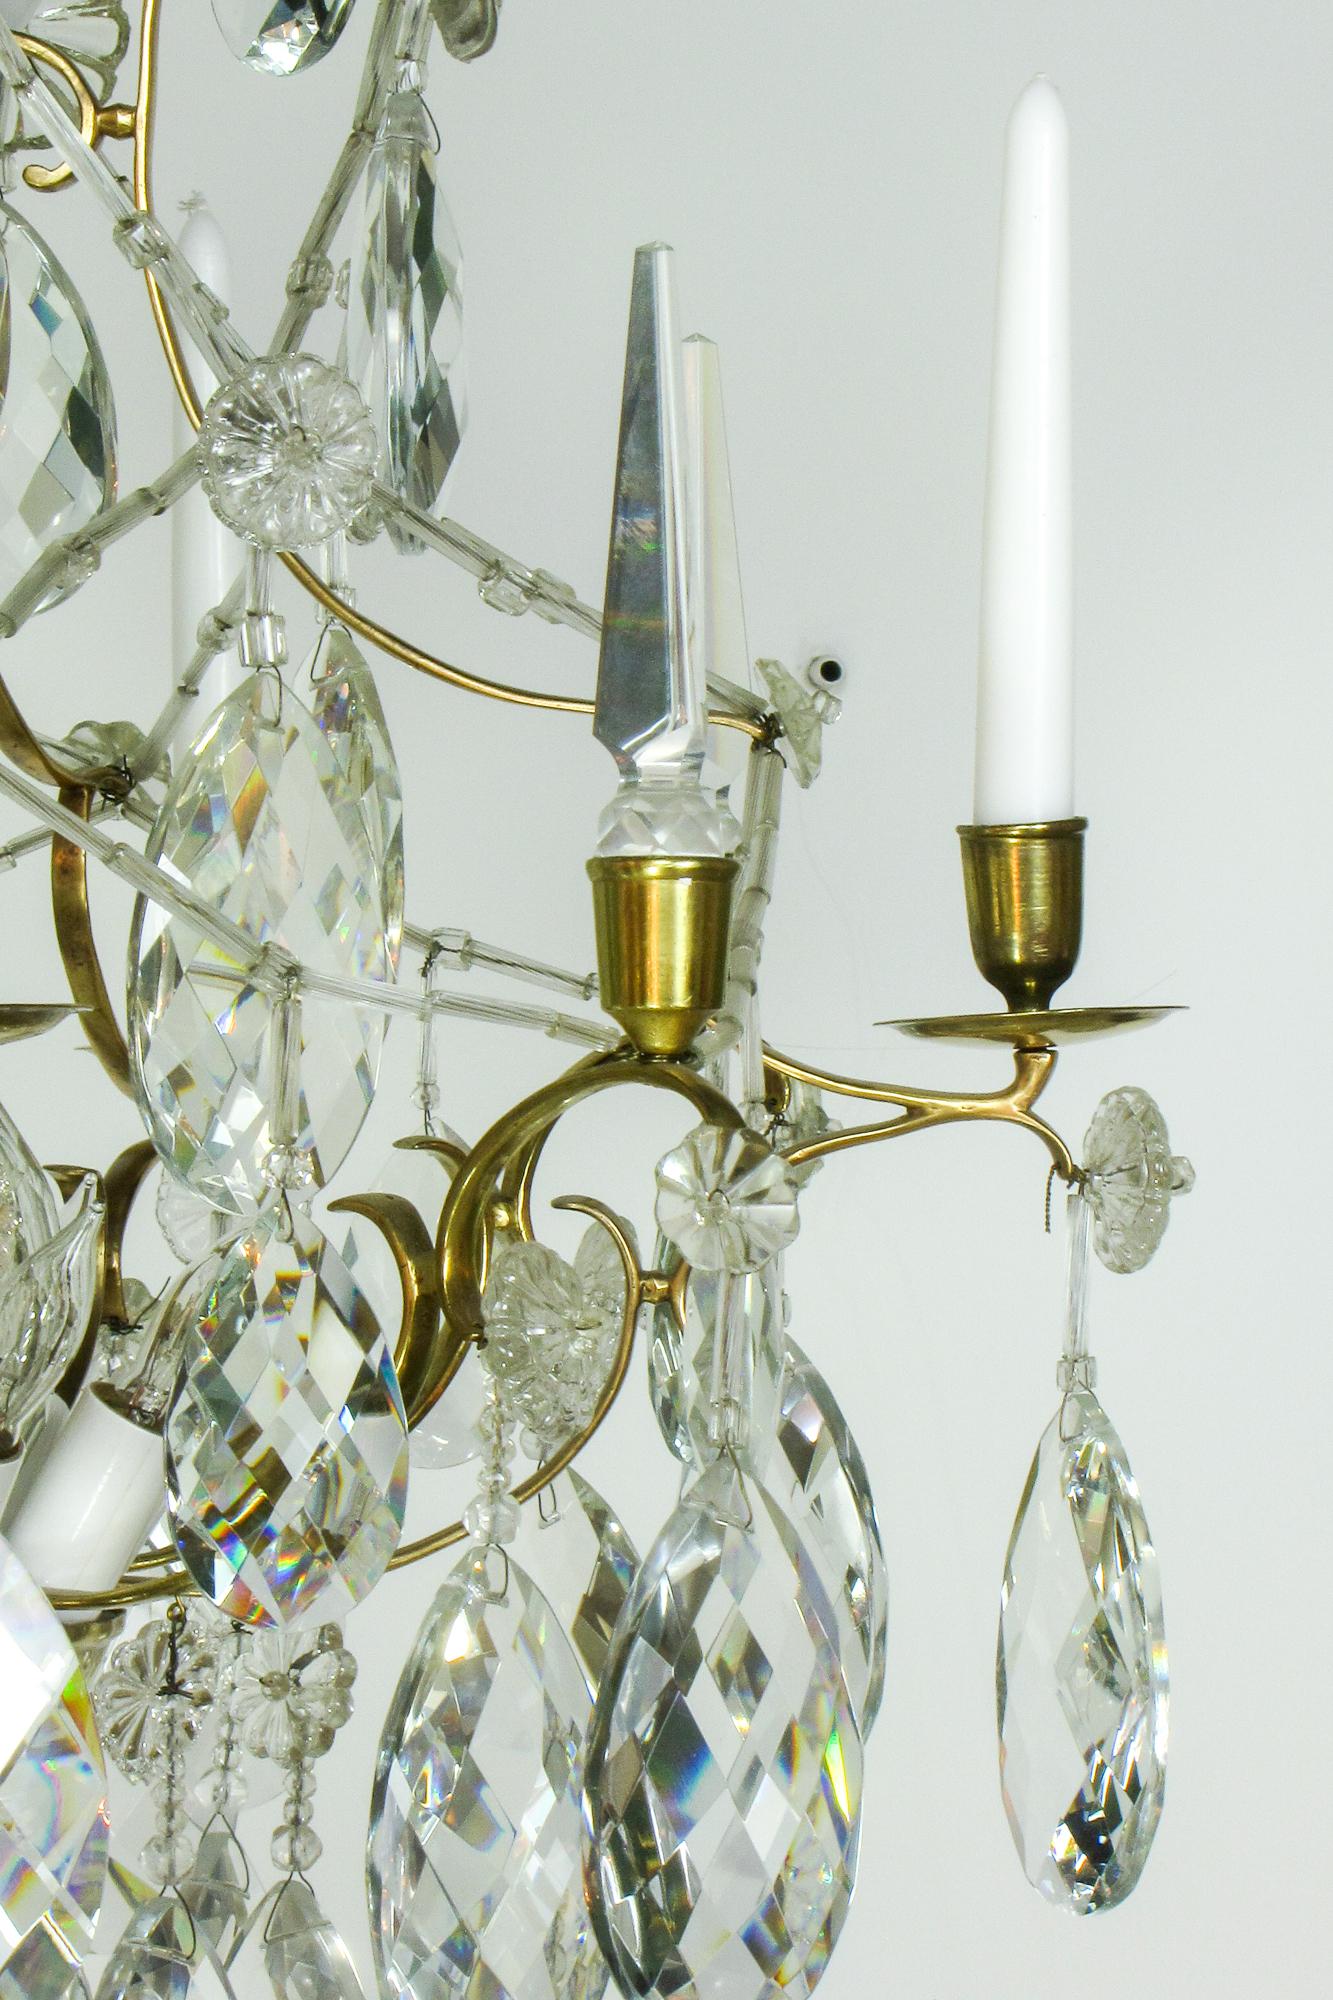 Un éblouissant lustre en cristal typique de la Suède du XVIIIe siècle.  Le lustre a une délicate armature en laiton, probablement fabriquée en France puis importée en Suède pour les cristaux.  Les cristaux sont de grande taille, taillés à la